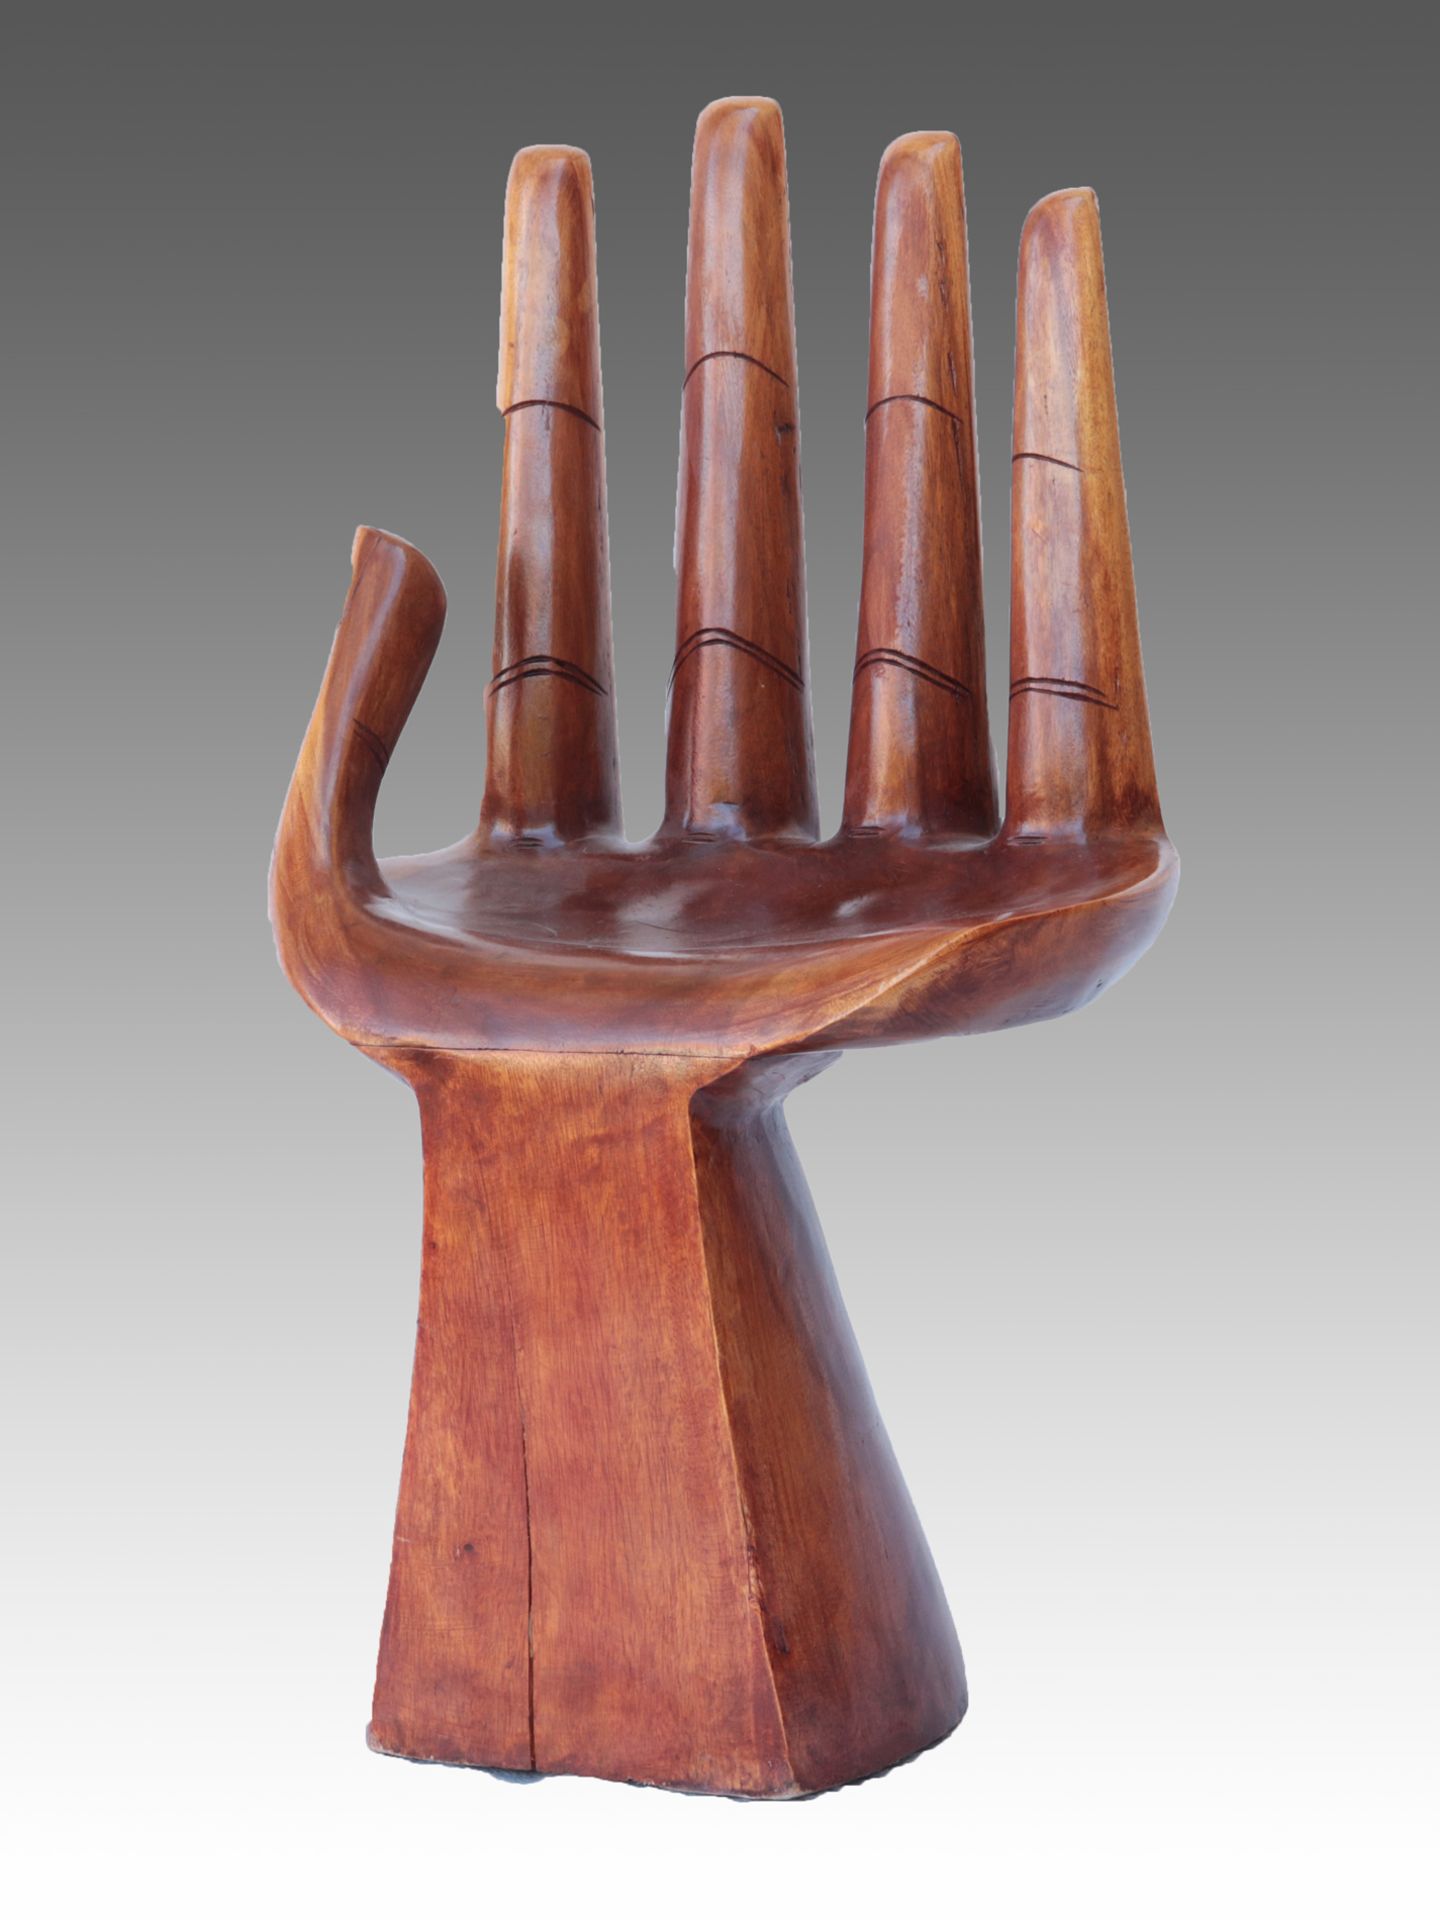 Stuhl/Hocker Indonesien, Hartholz, lackiert, massiv, handförmig, Finger und Handfläc